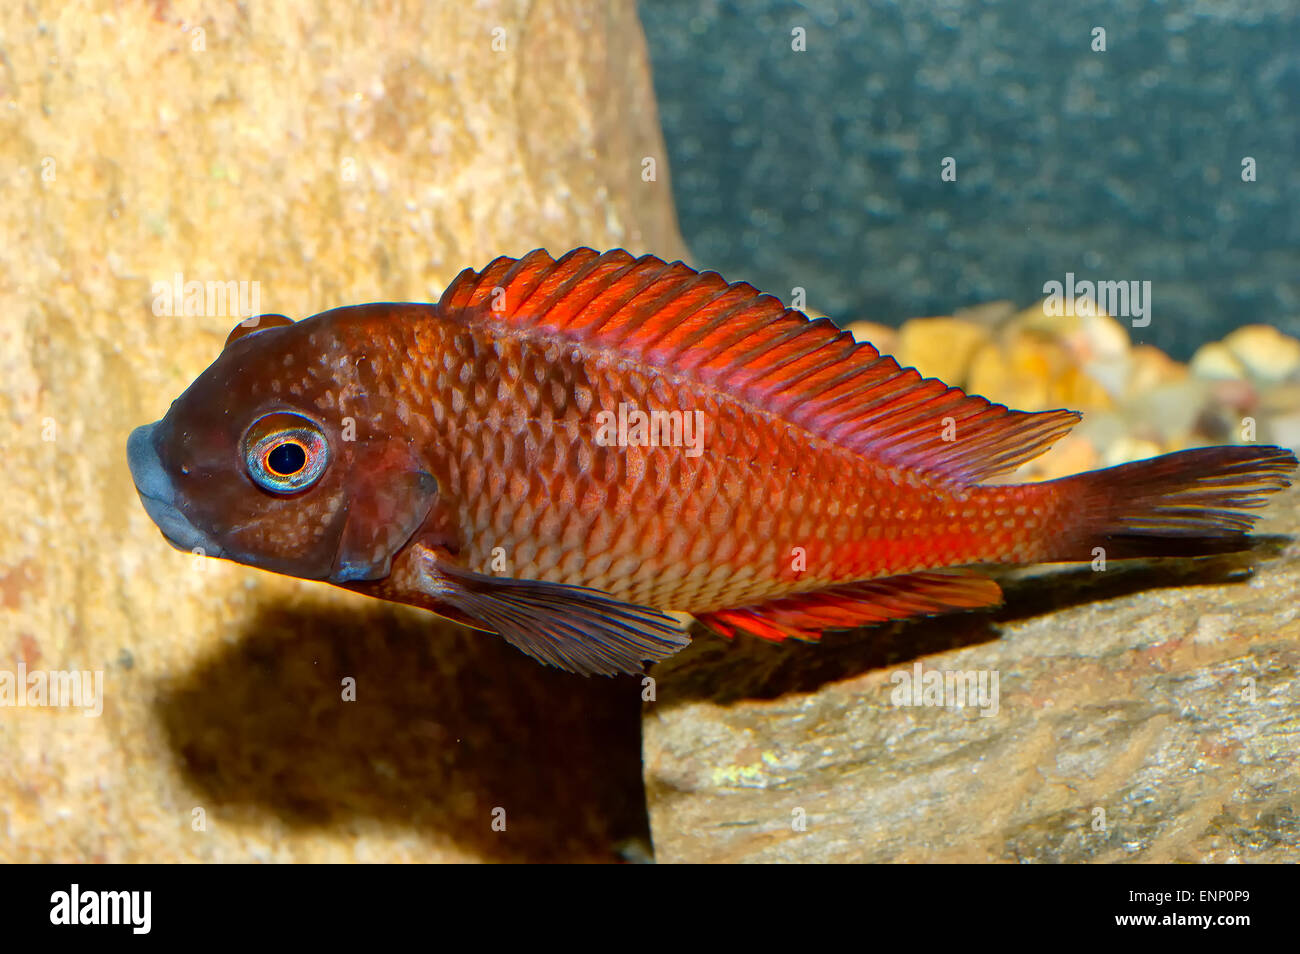 Nice aquarium fish from genus Tropheus. Stock Photo